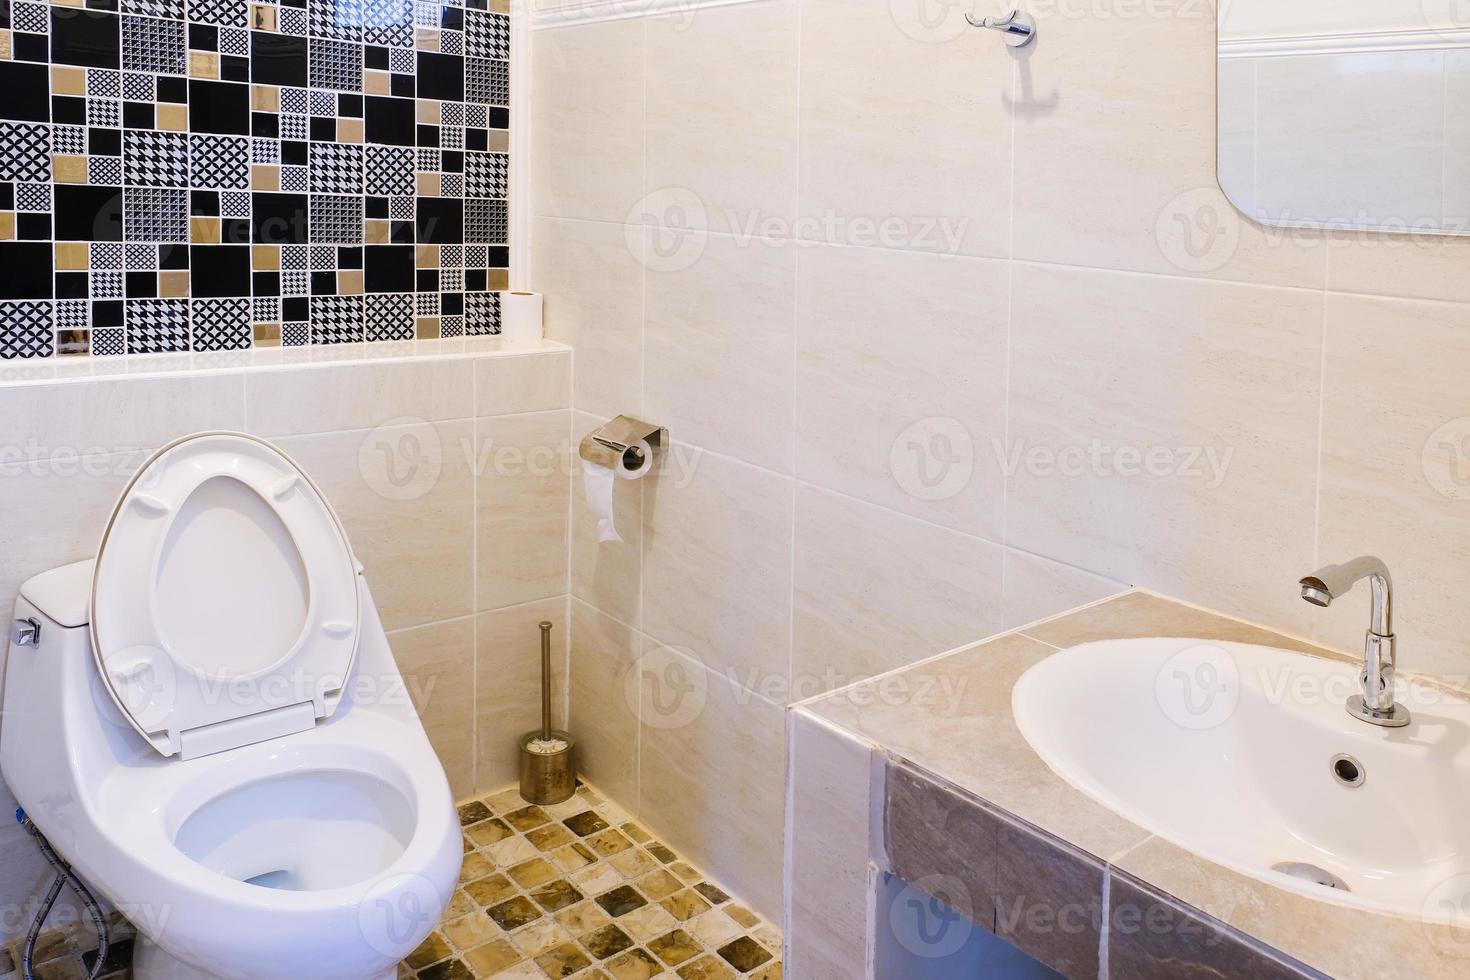 baño cuenco en un moderno baño ,enjuagar baño limpiar baño foto